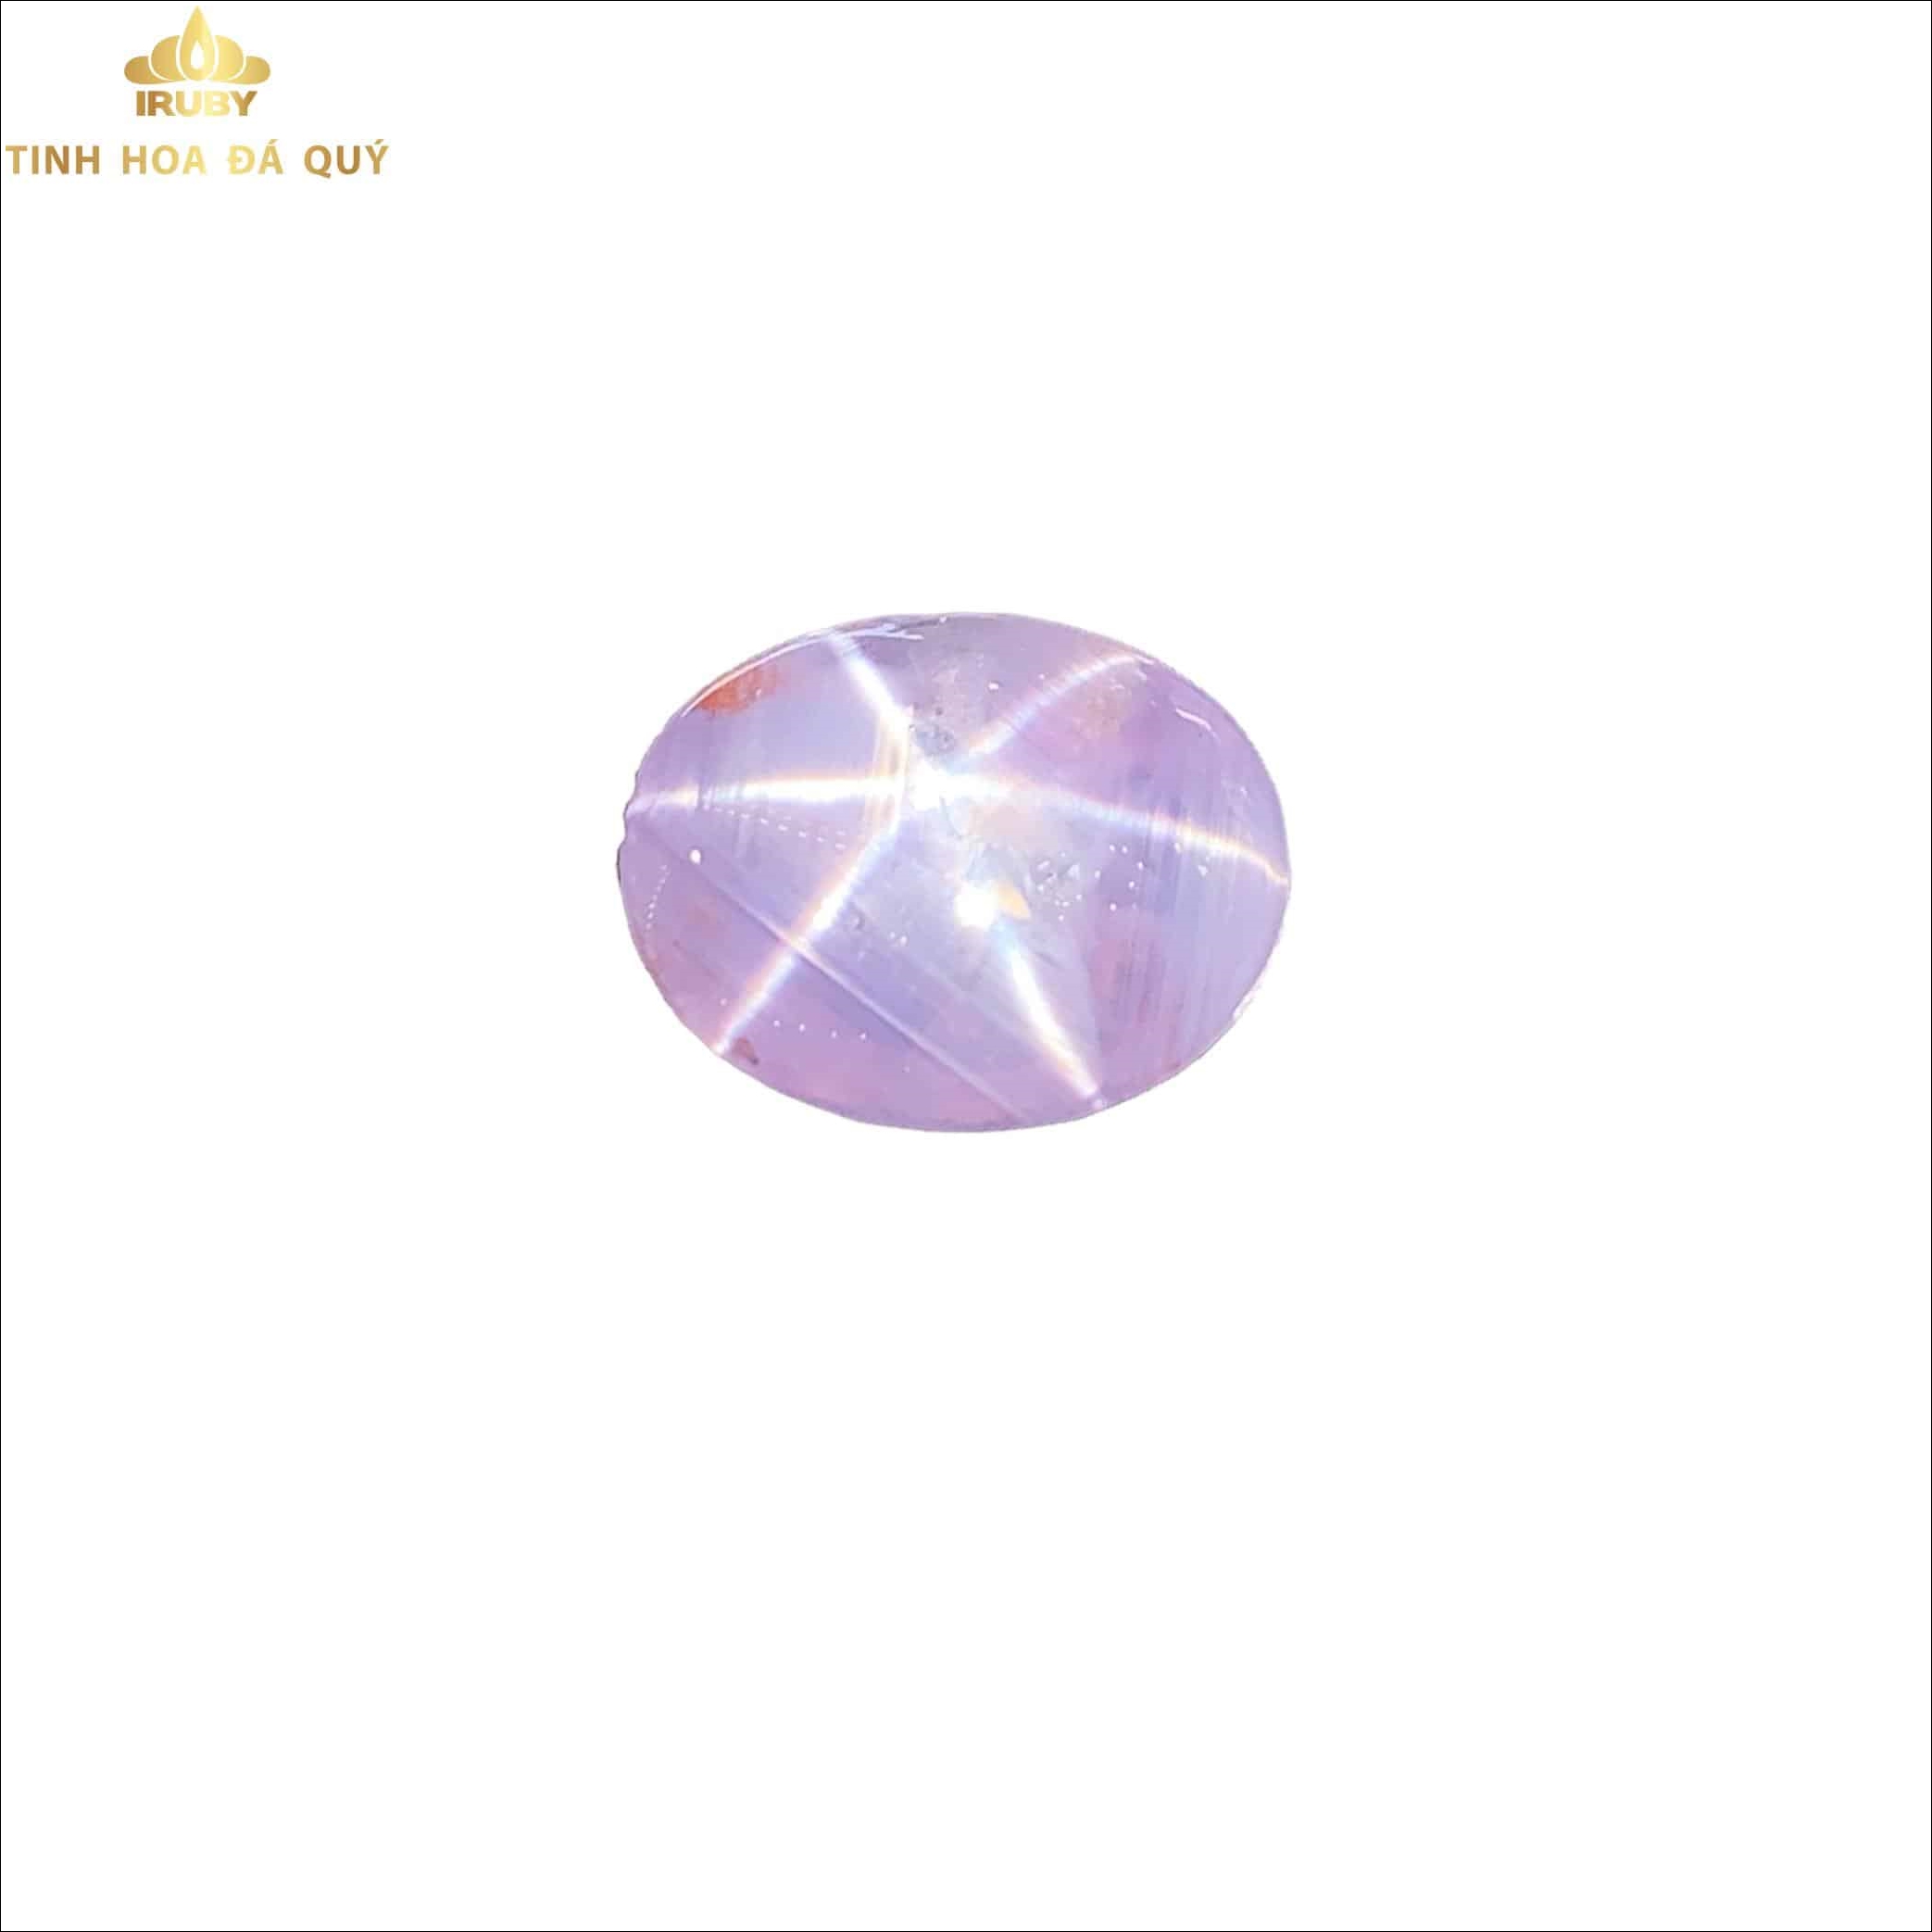 Viên Sapphire sao nét 10 điểm màu lavender - IRSS 2211745